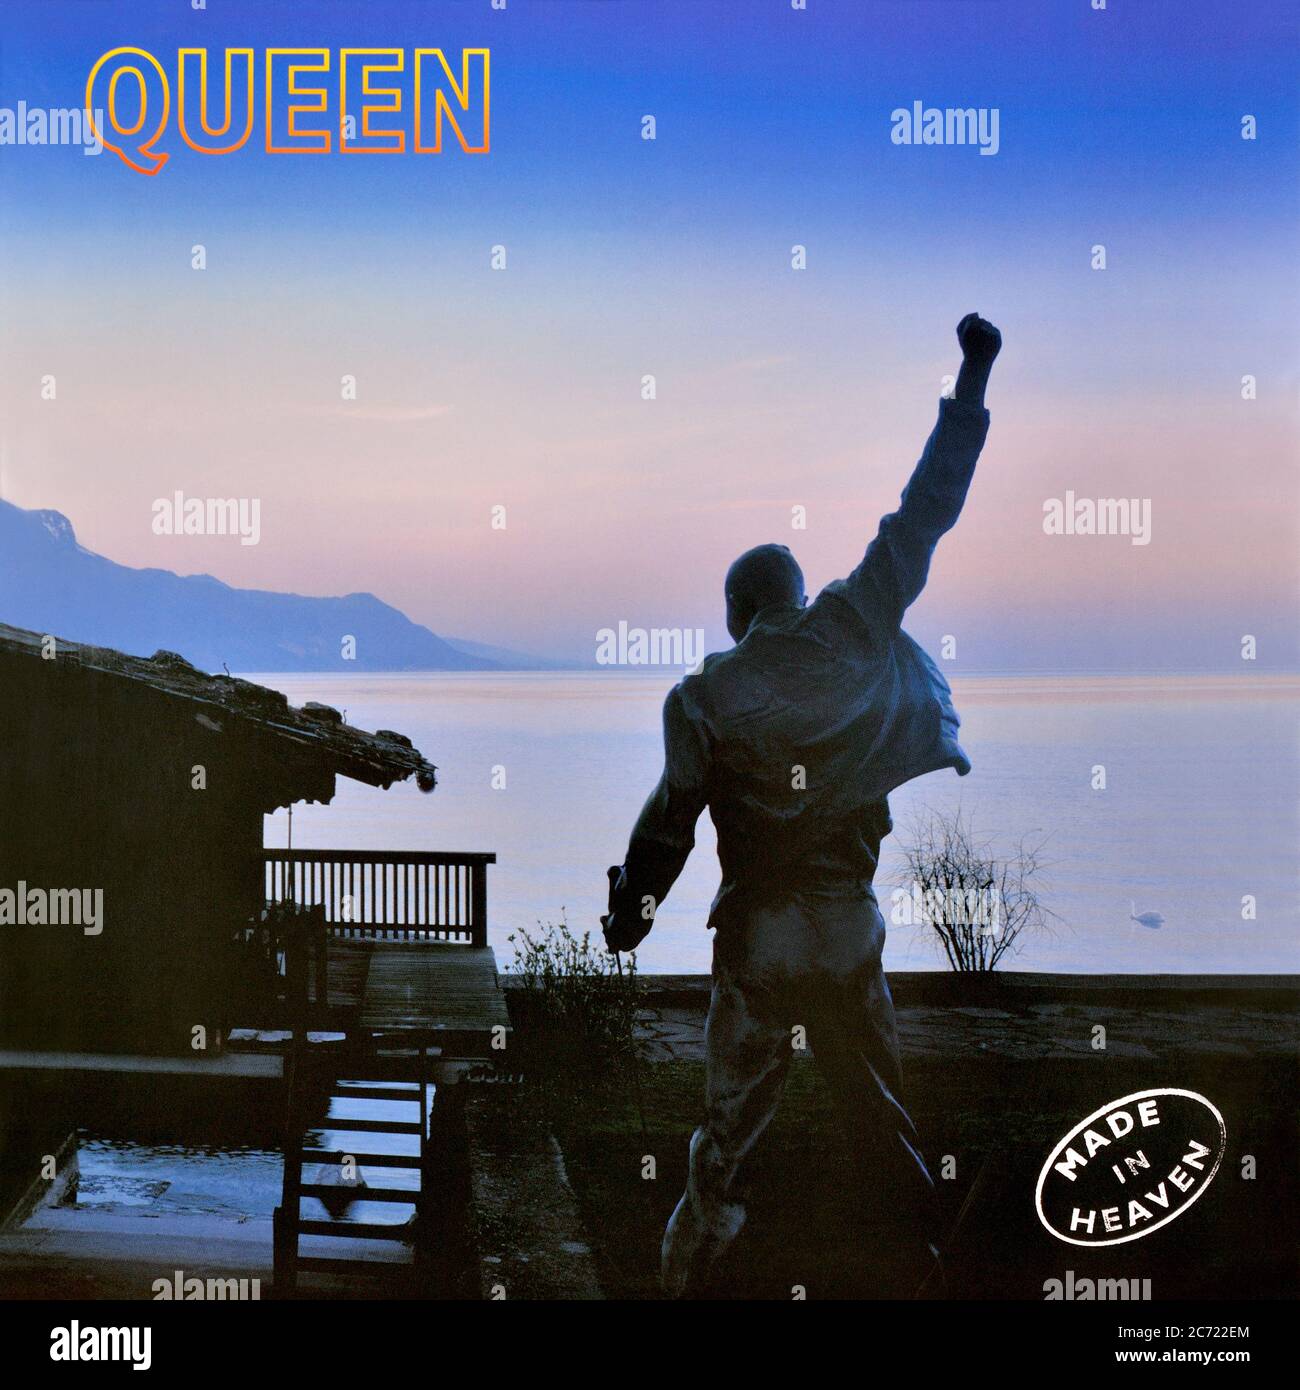 Queen - original vinyl album cover - Made In Heaven - 1995 Stock Photo